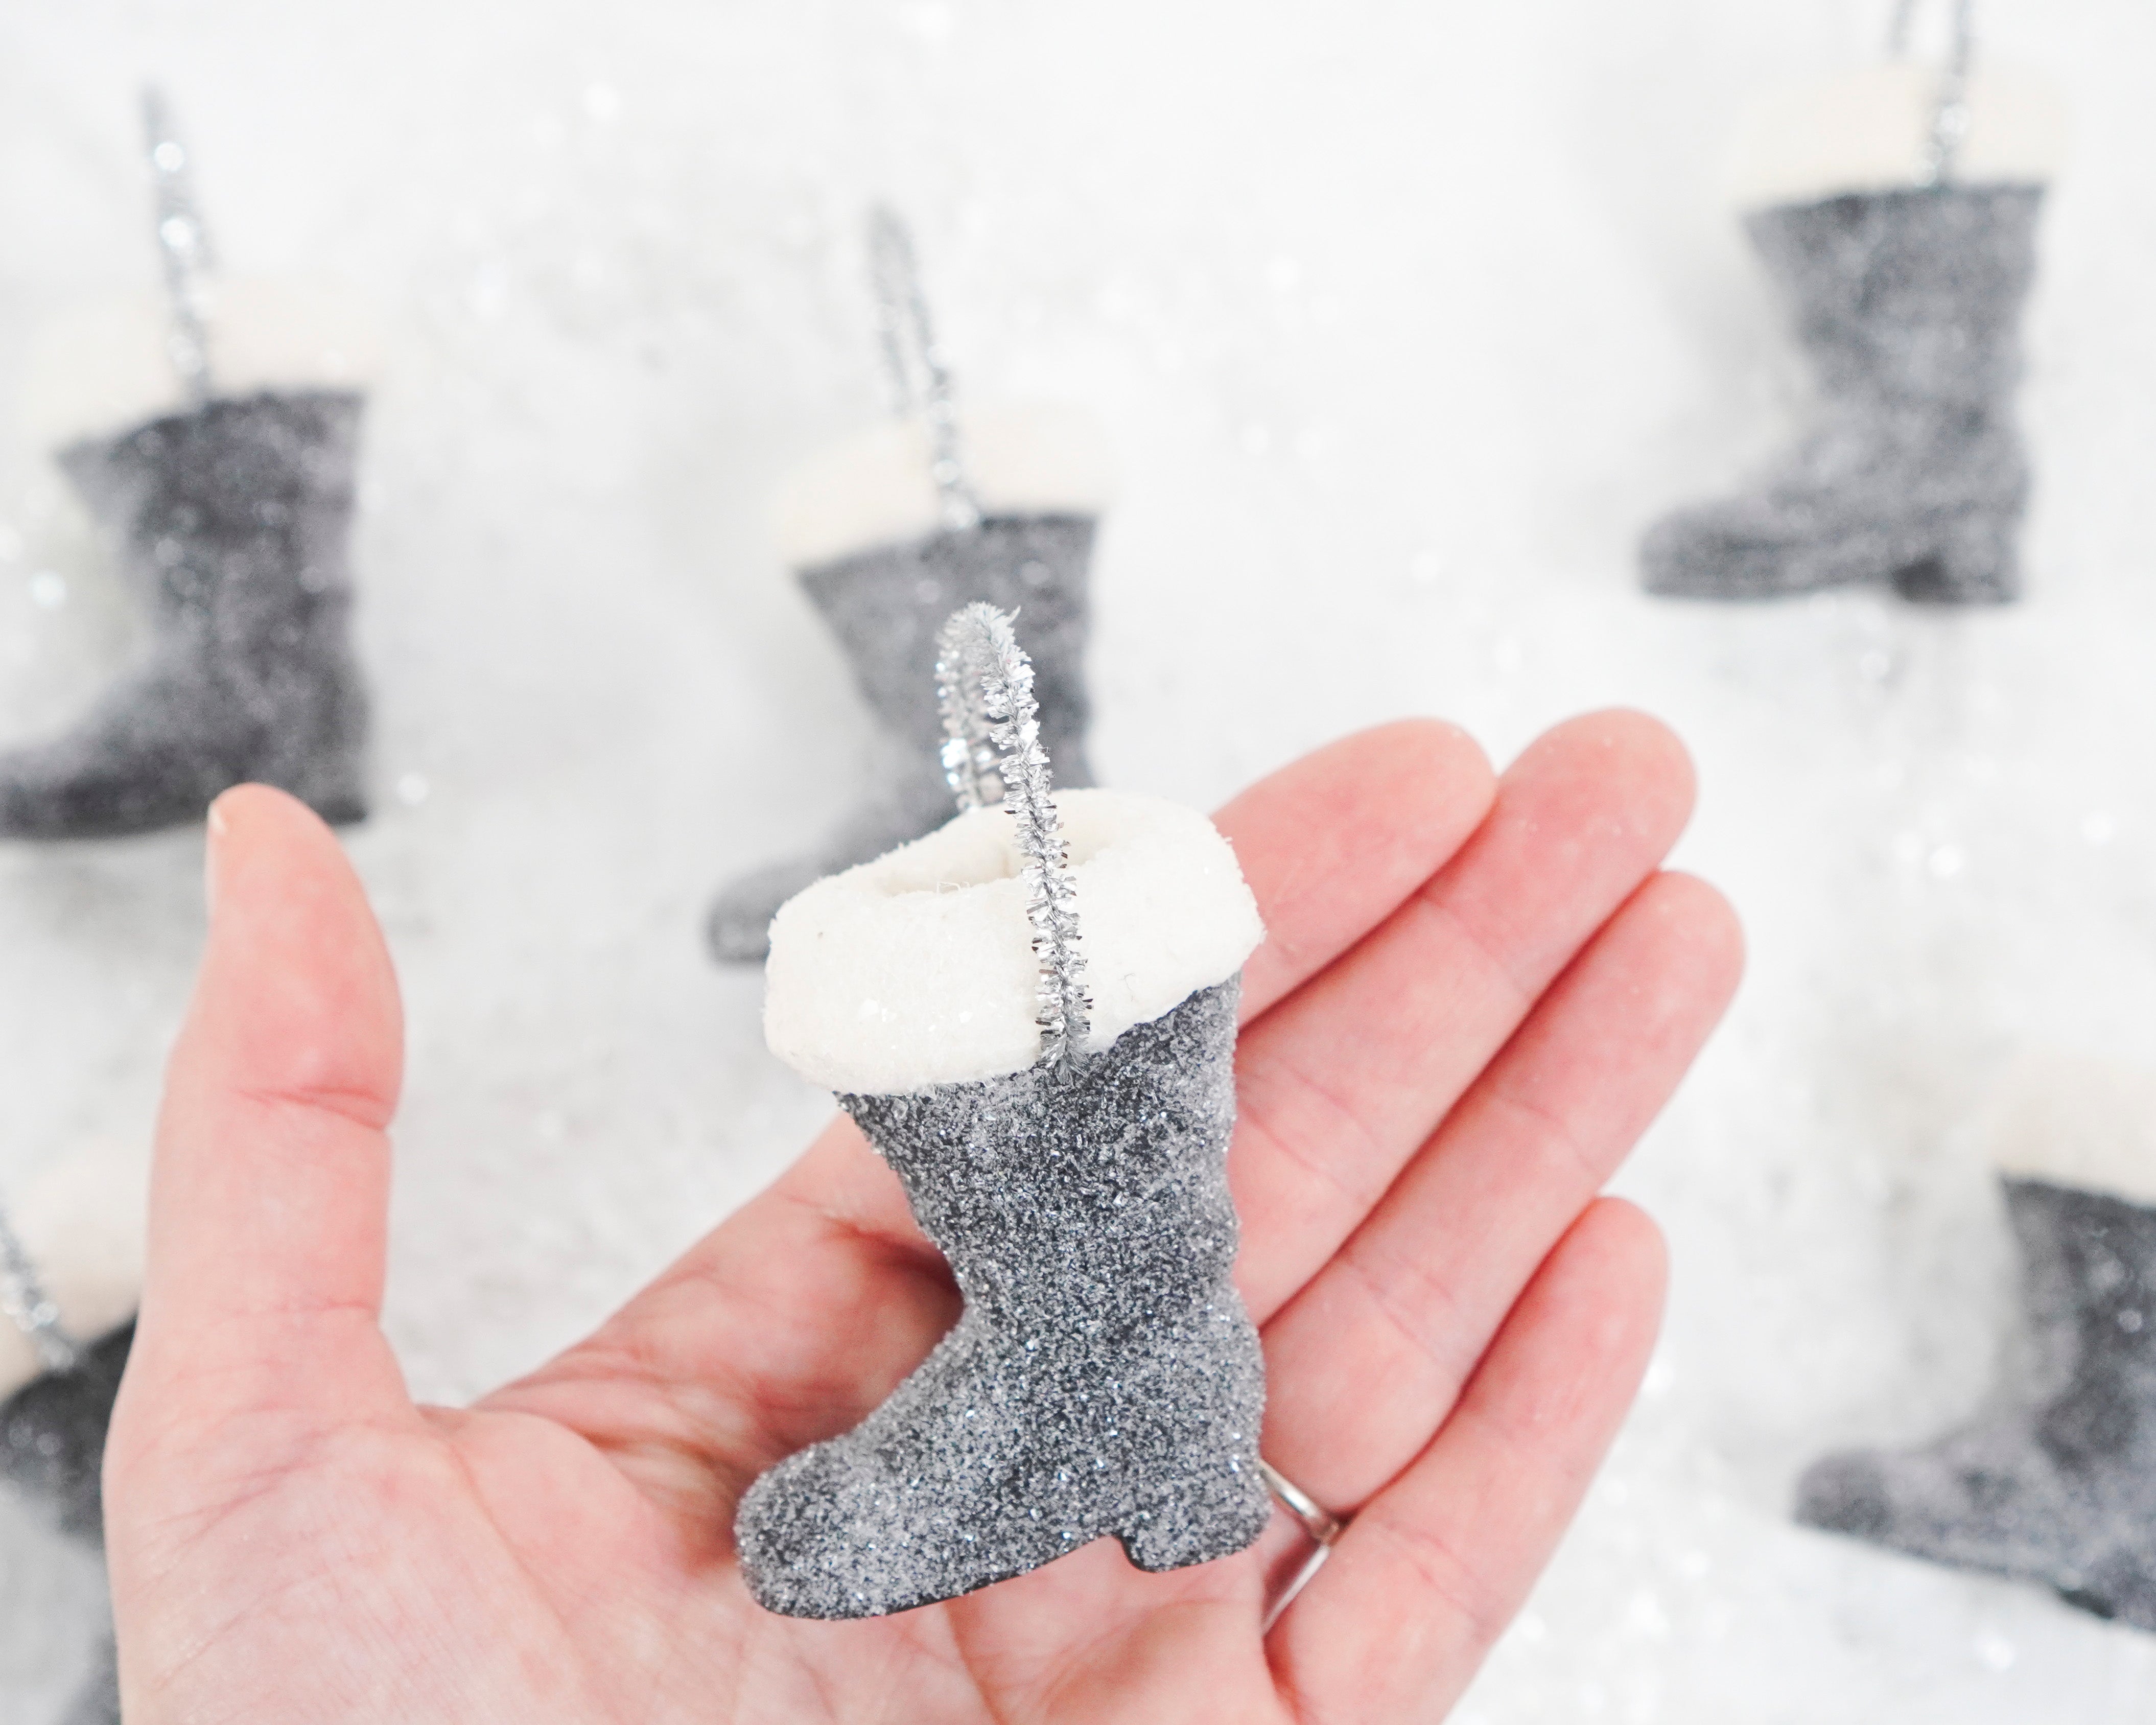 Mini Santa Boot Ornament - Black Frosted Paper Mache with Cotton Trim